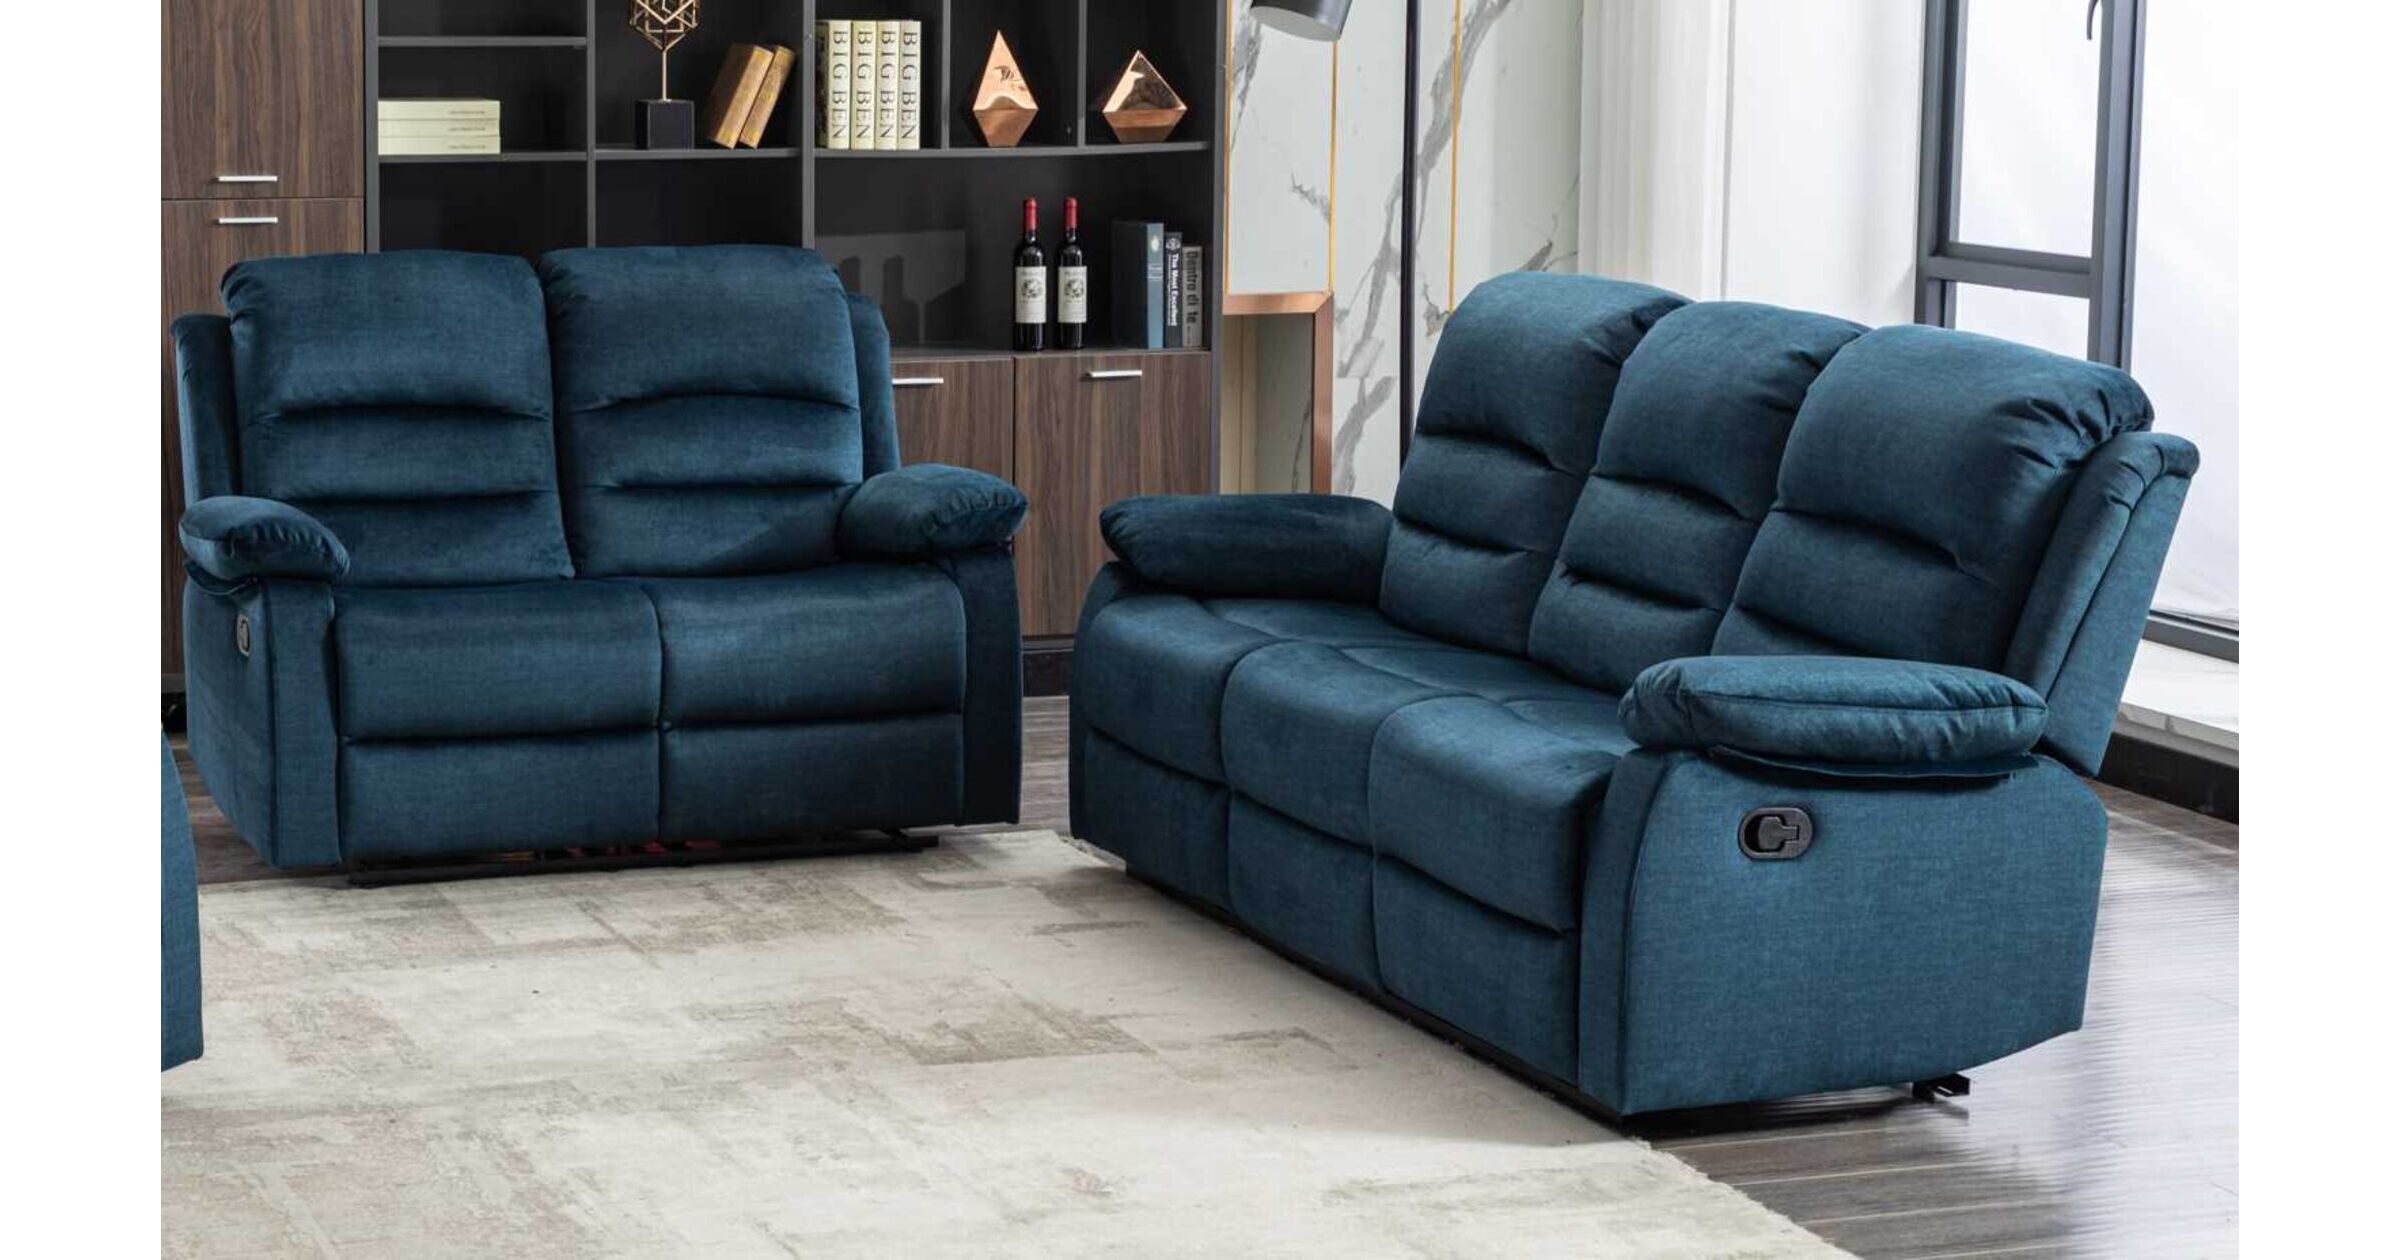 Kensley 3+2 Ocean Blue Fabric Recliner Sofa Suite | Designer Sofas4u